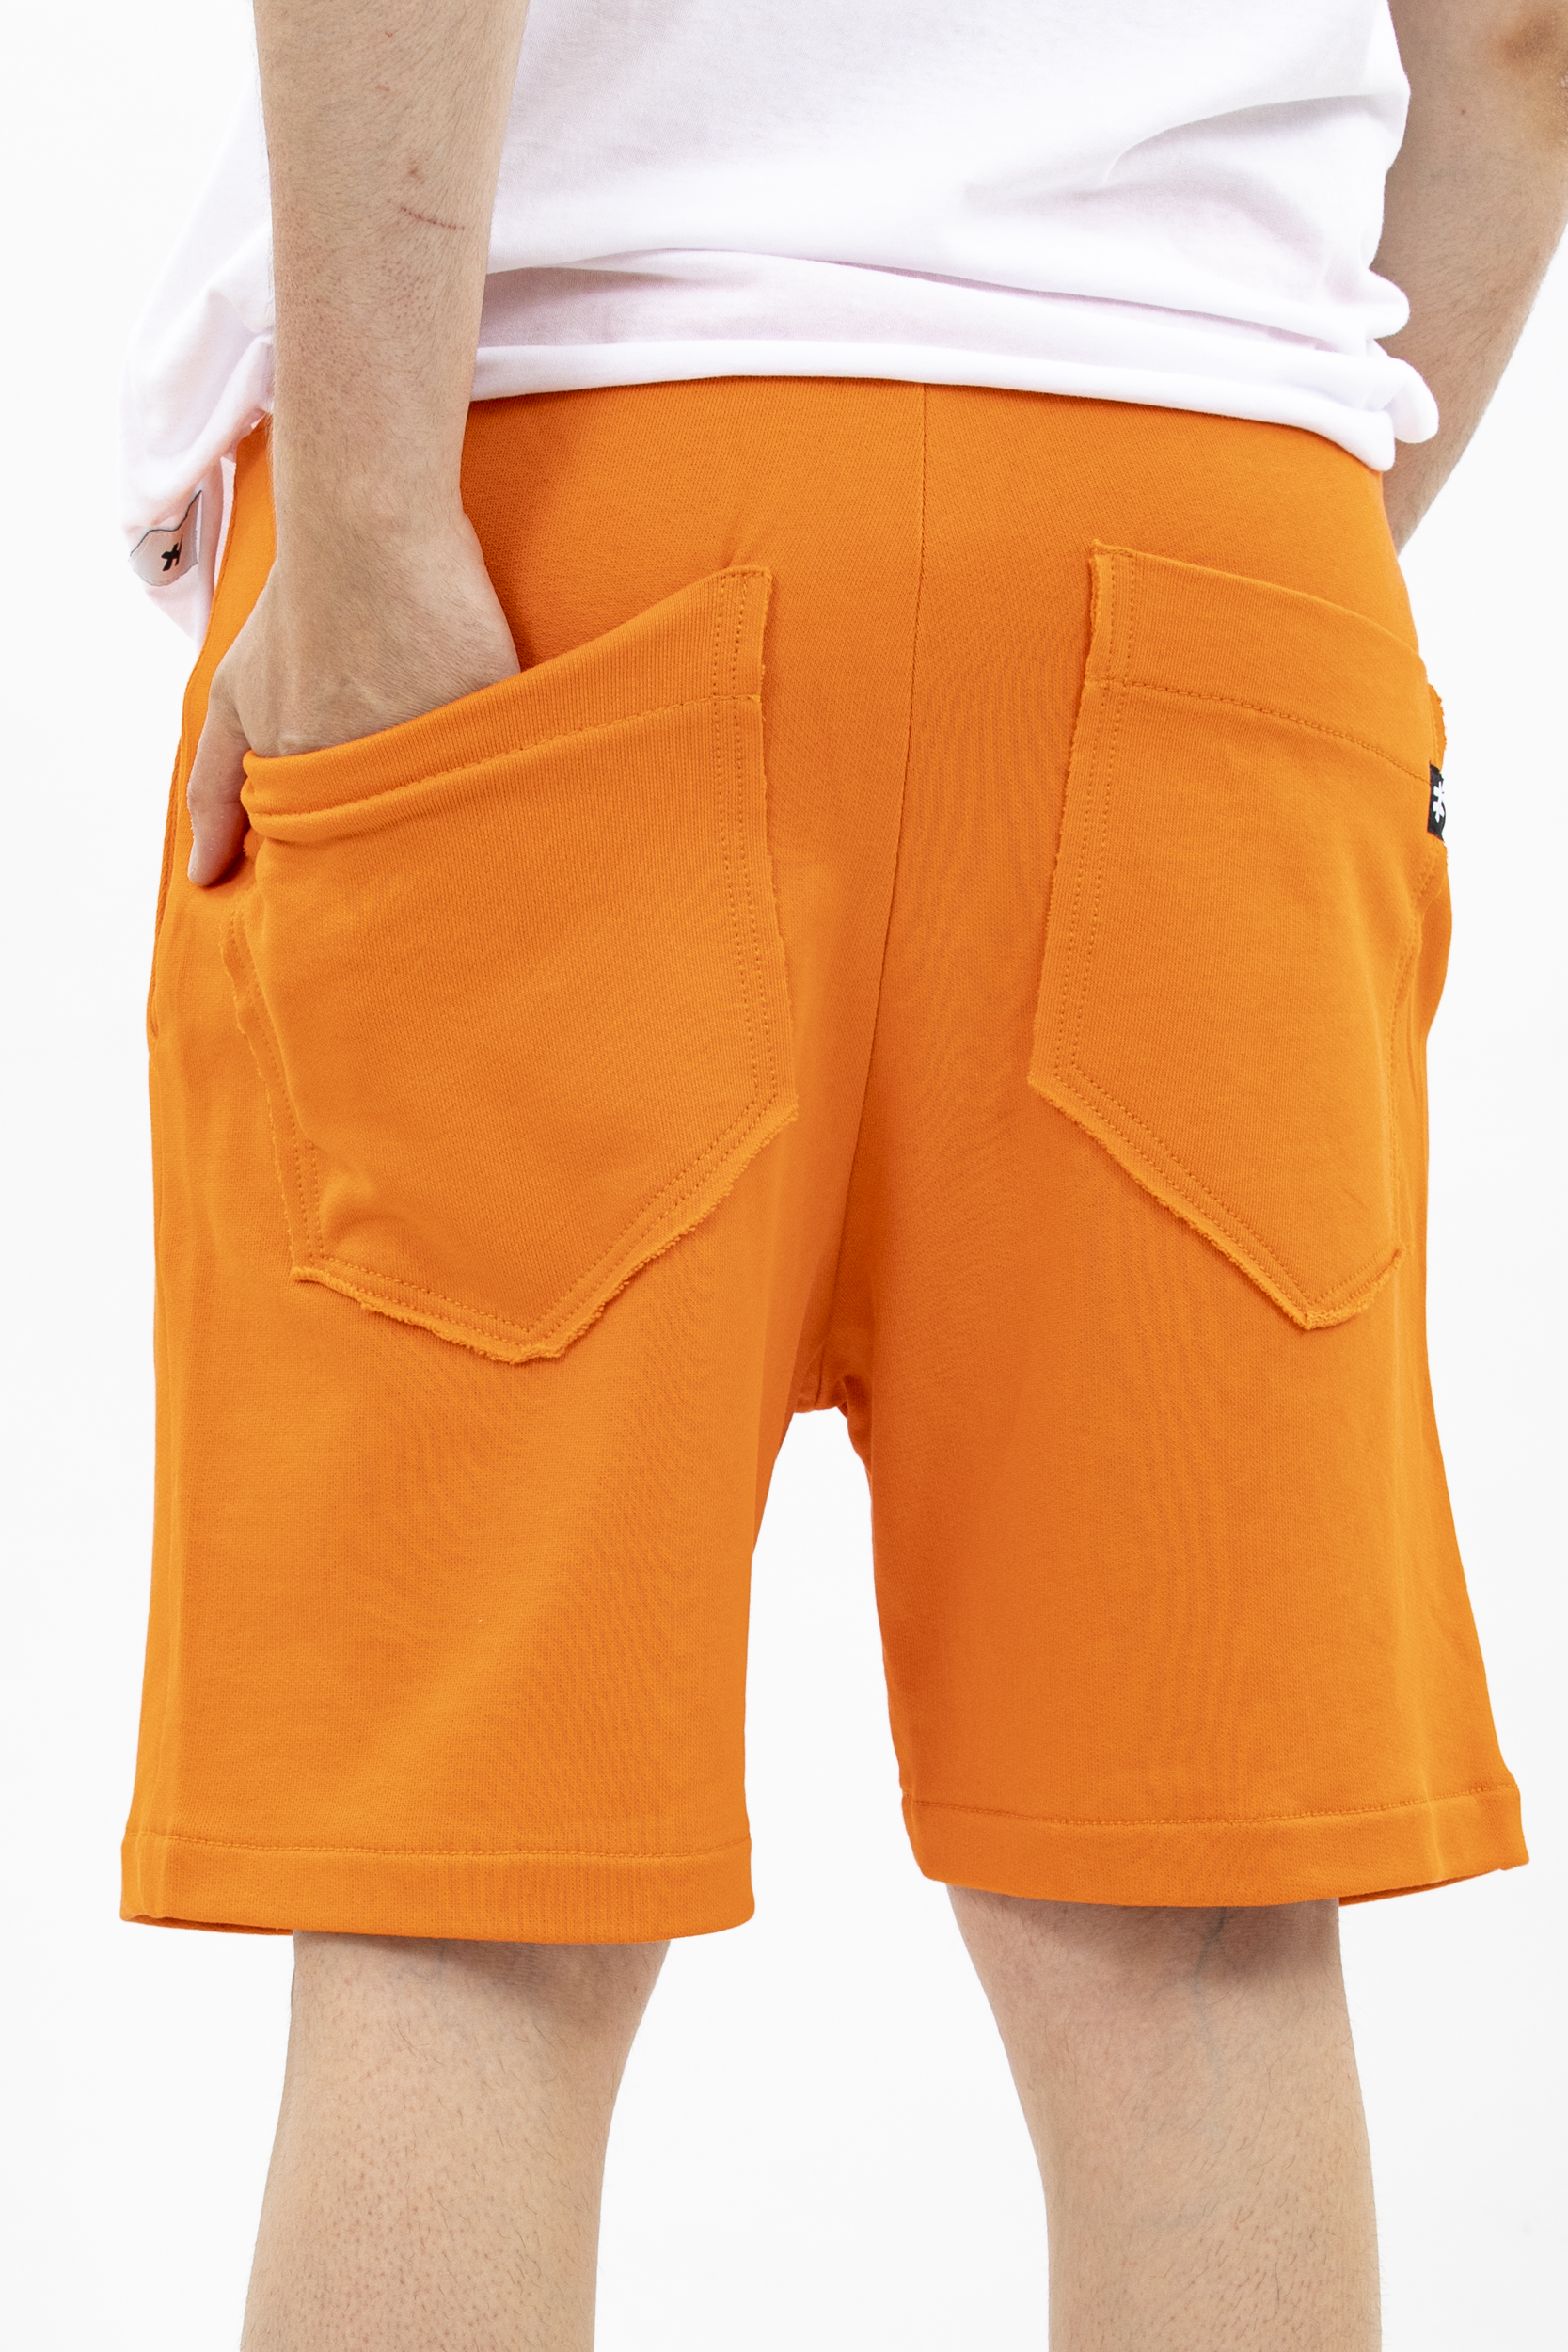 Pantaloni short orange cotton